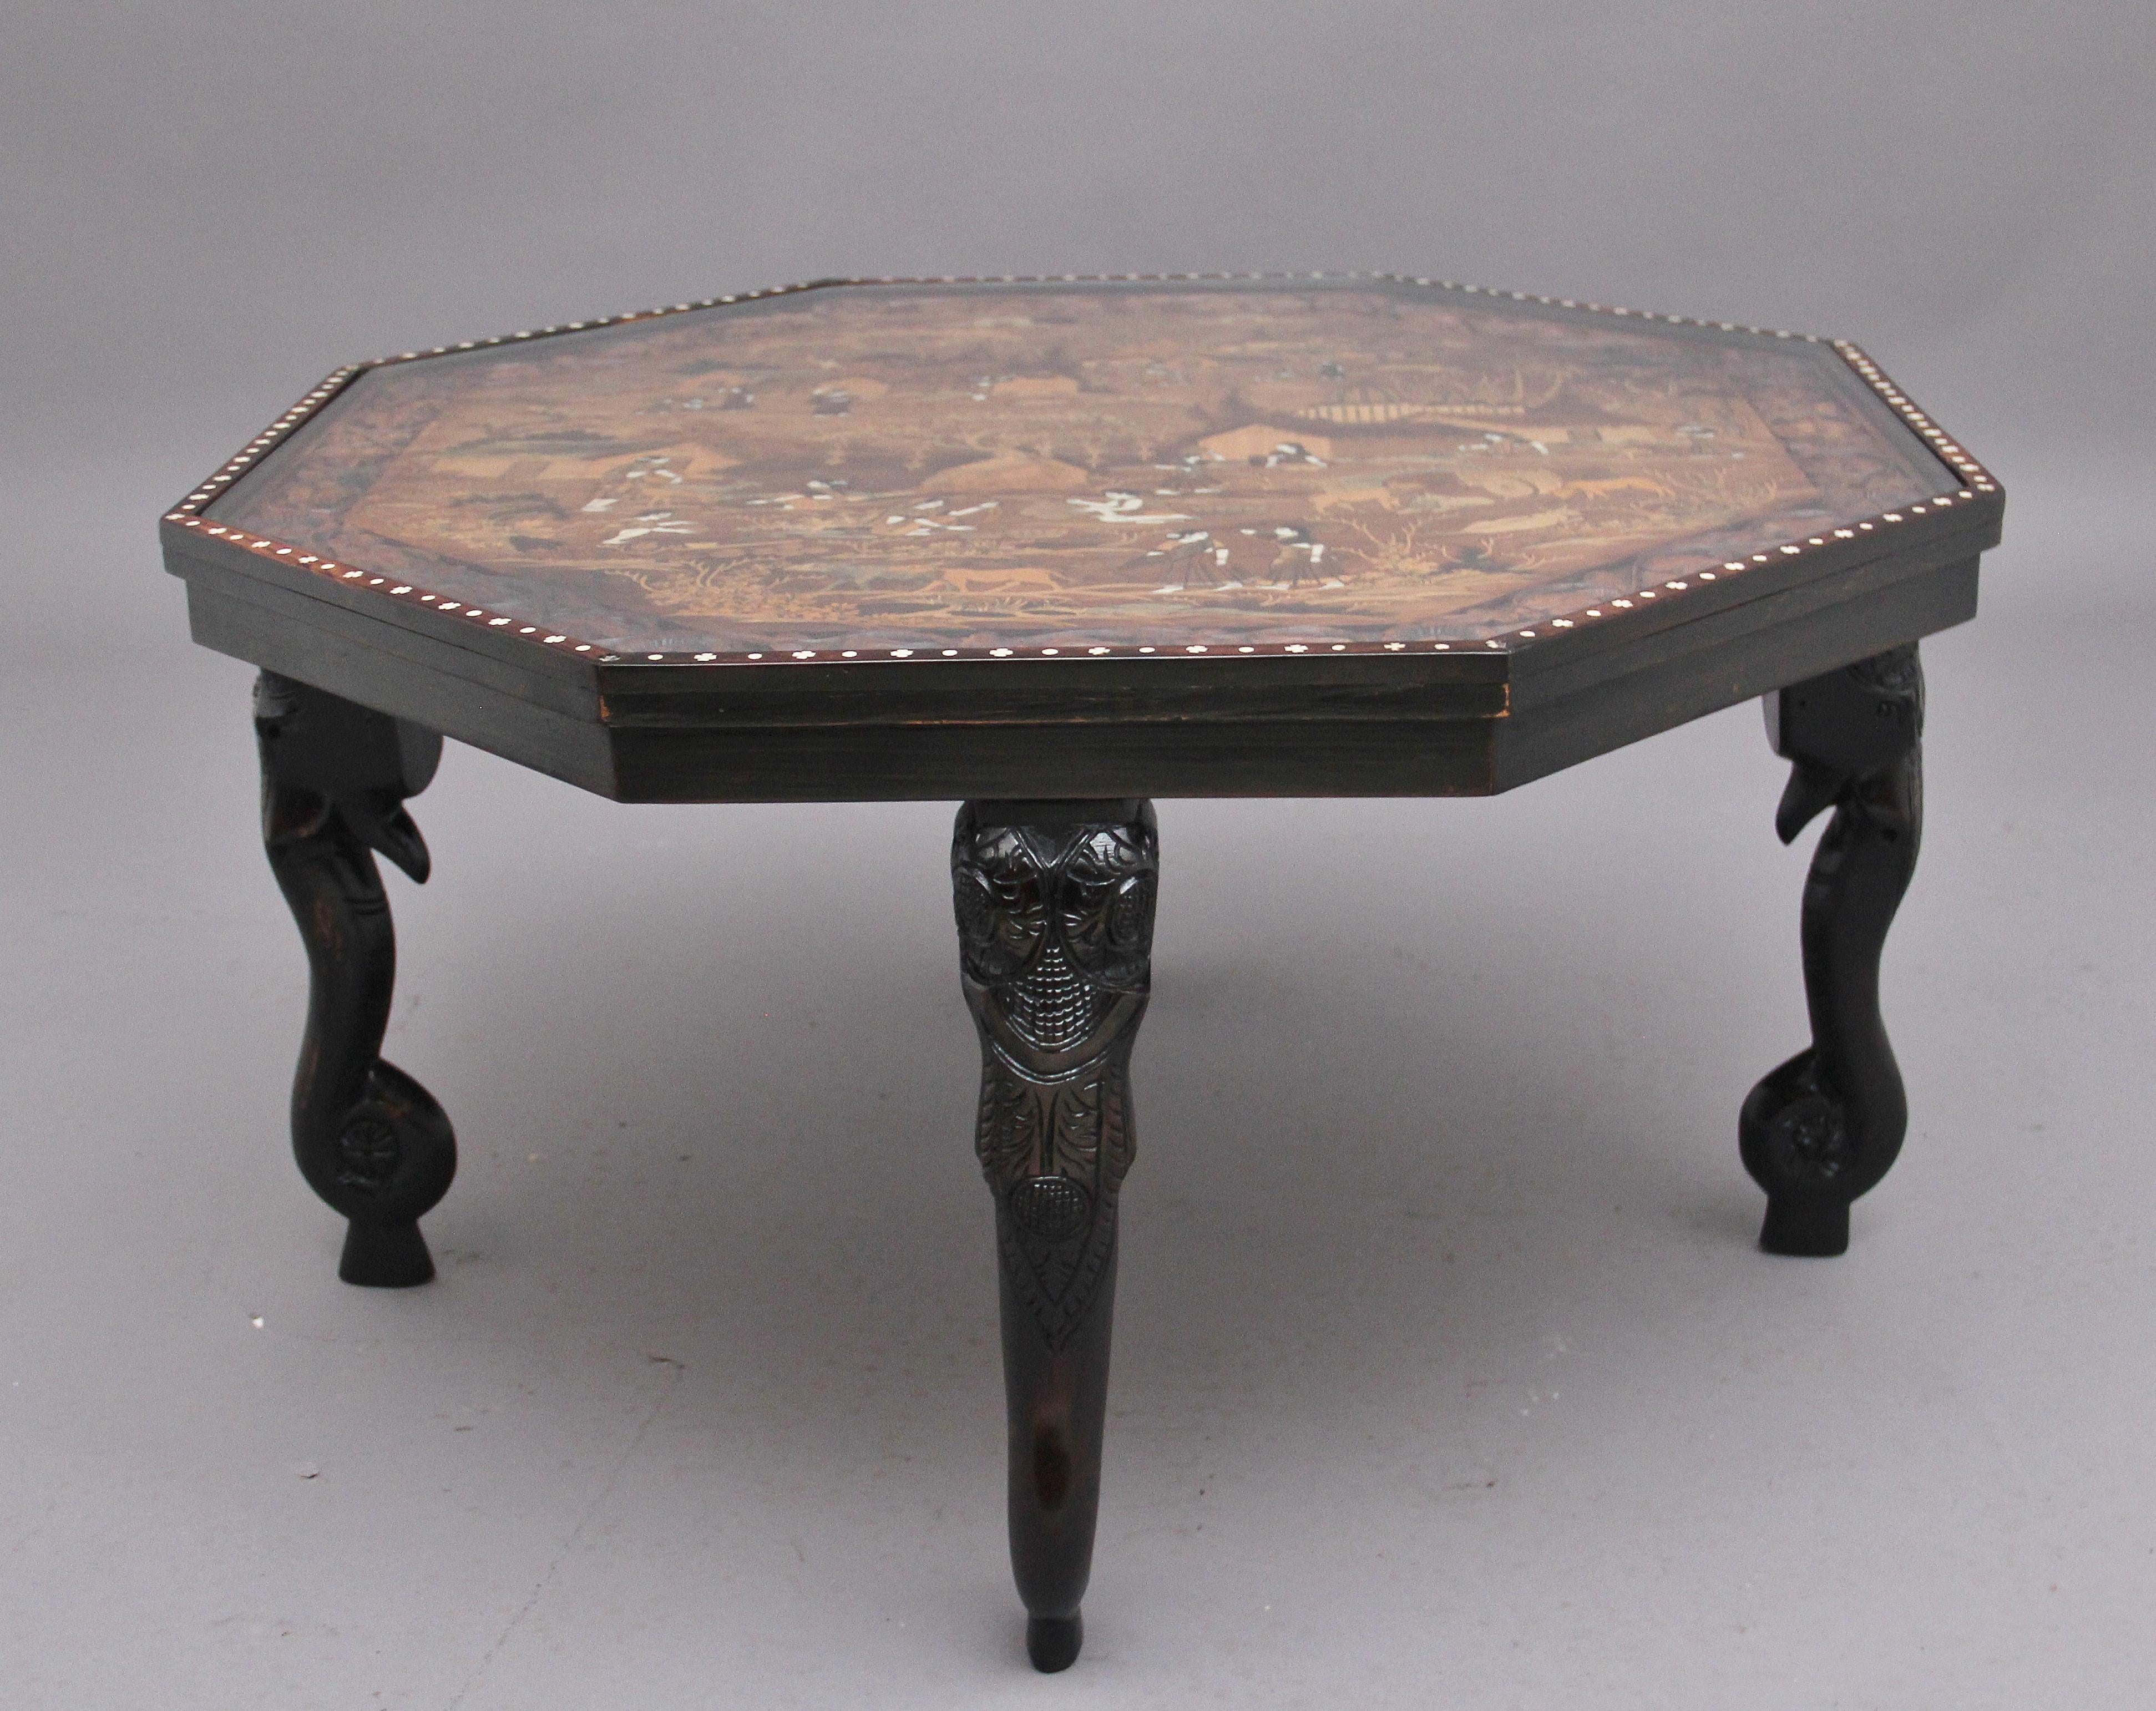 Table d'appoint / table basse indienne en ébène, très décorative, datant du milieu du 20e siècle. Le plateau de forme octogonale est richement incrusté d'une scène de campagne indienne et présente une bordure sculptée de fleurs, le plateau est